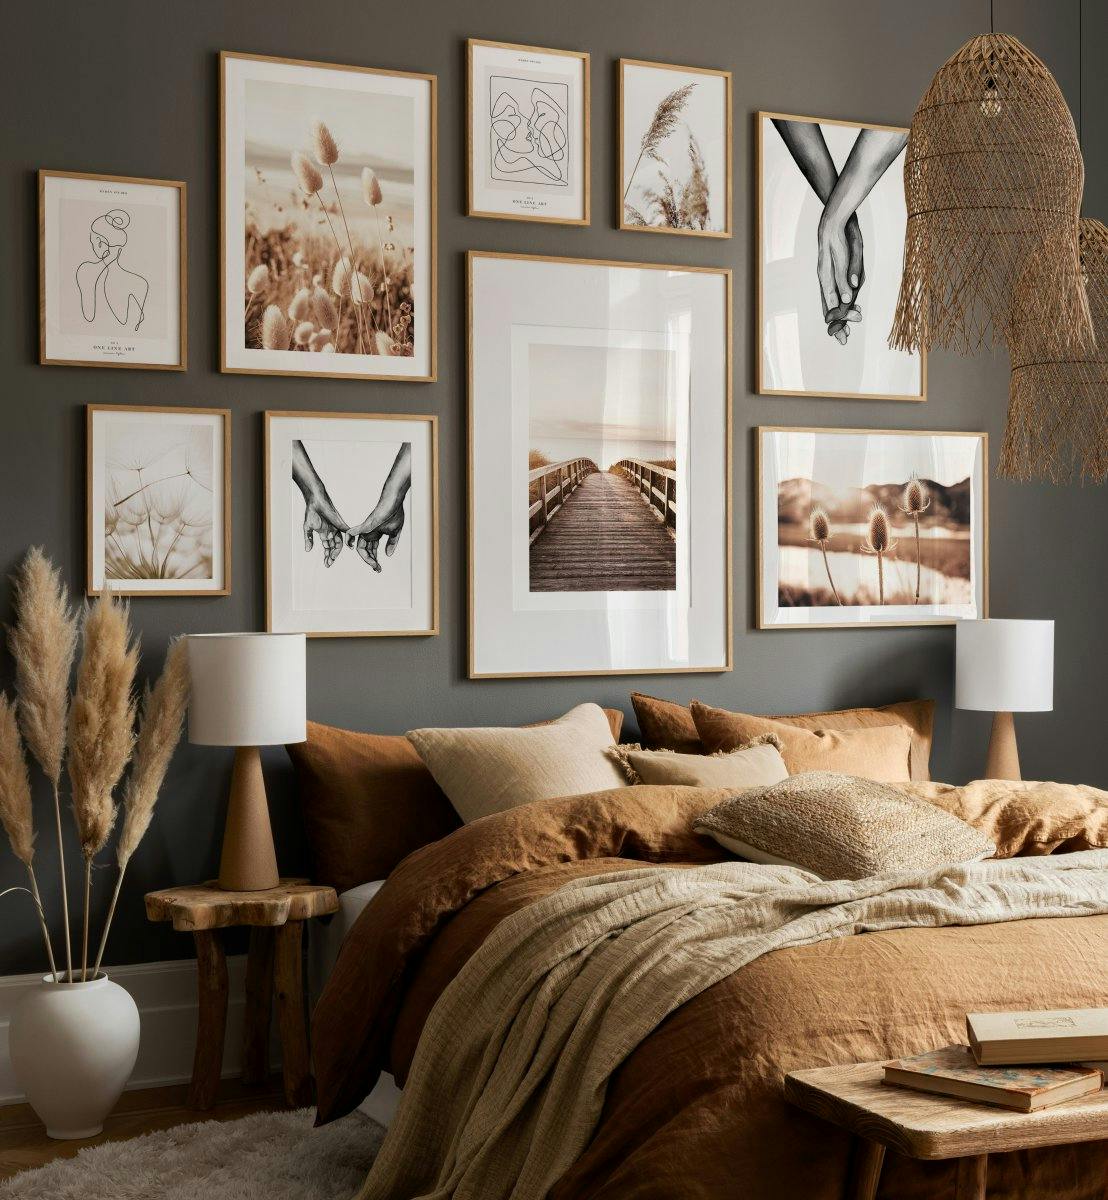 Beige serene natuurfoto's met zwart-wit prints voor slaapkamer